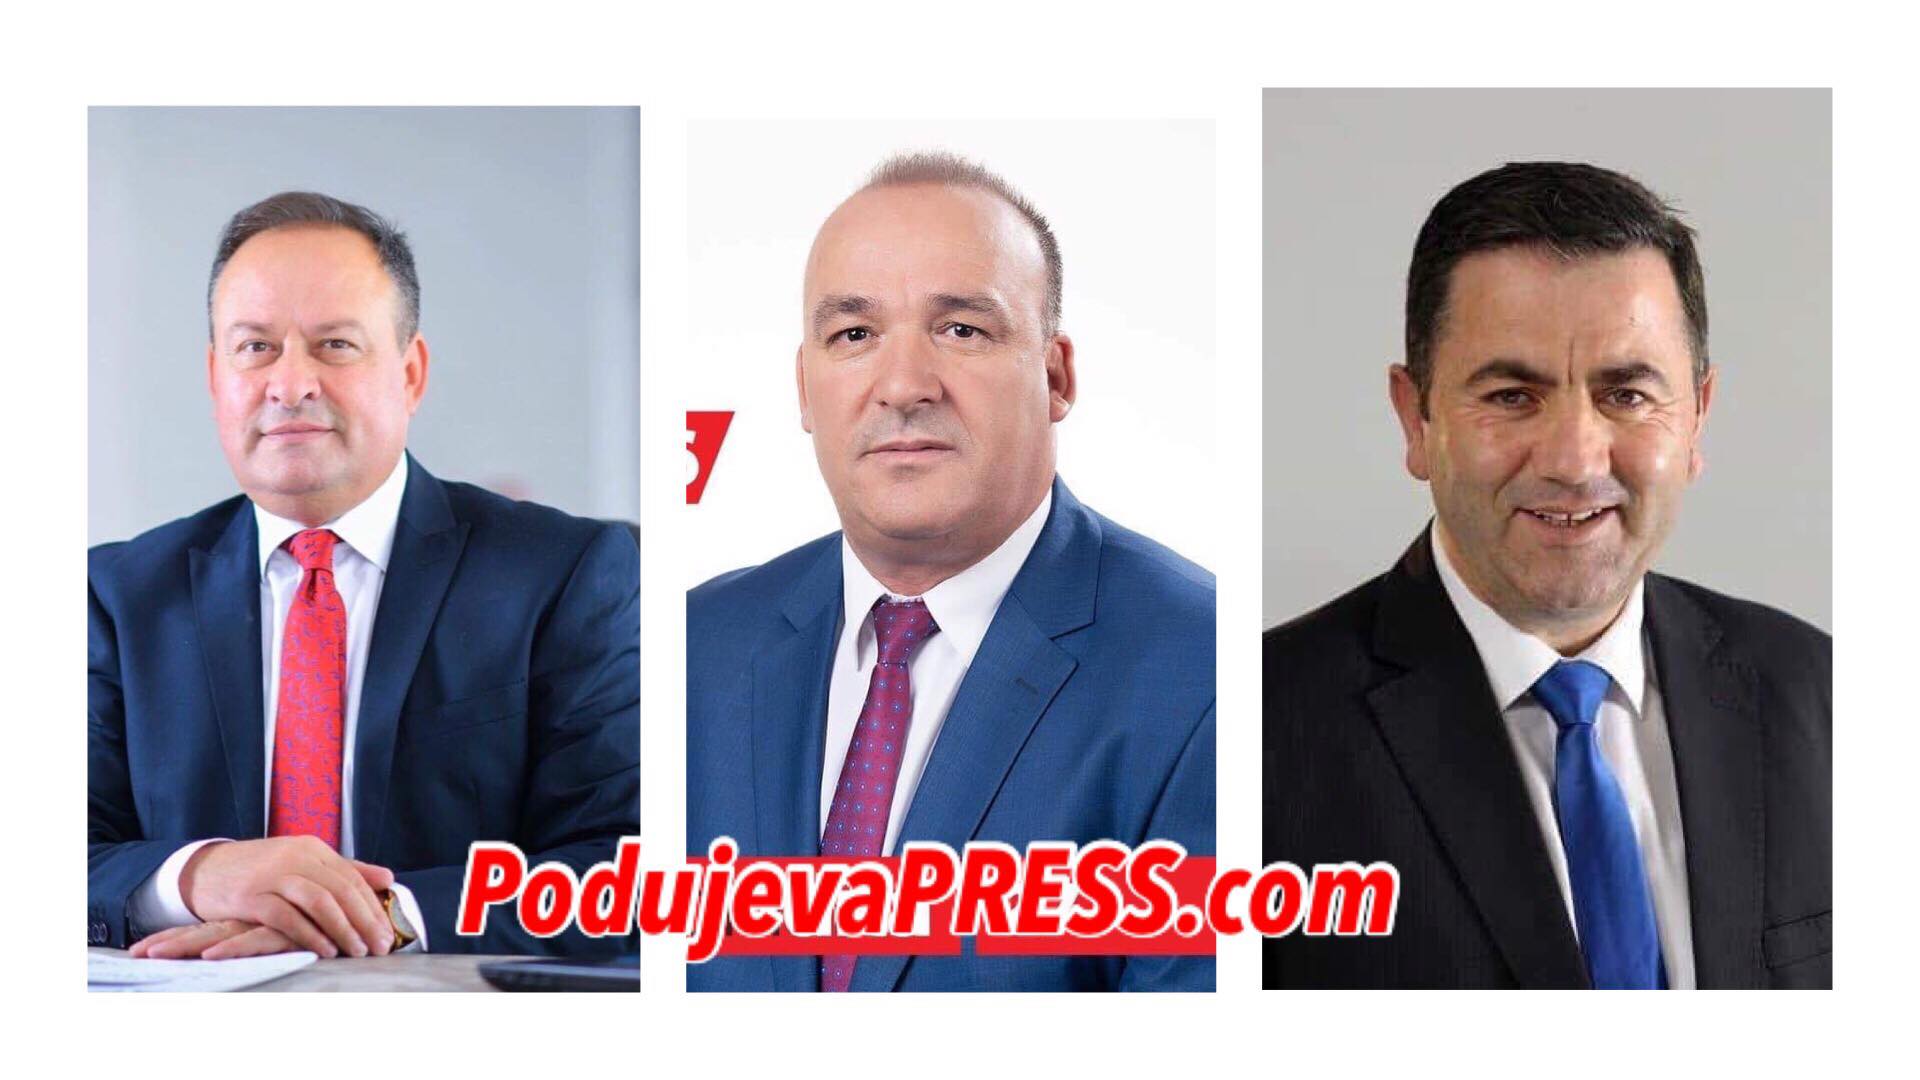  Kush i bashkoi kandidatët për kryetar të Podujevës? |PAMJE